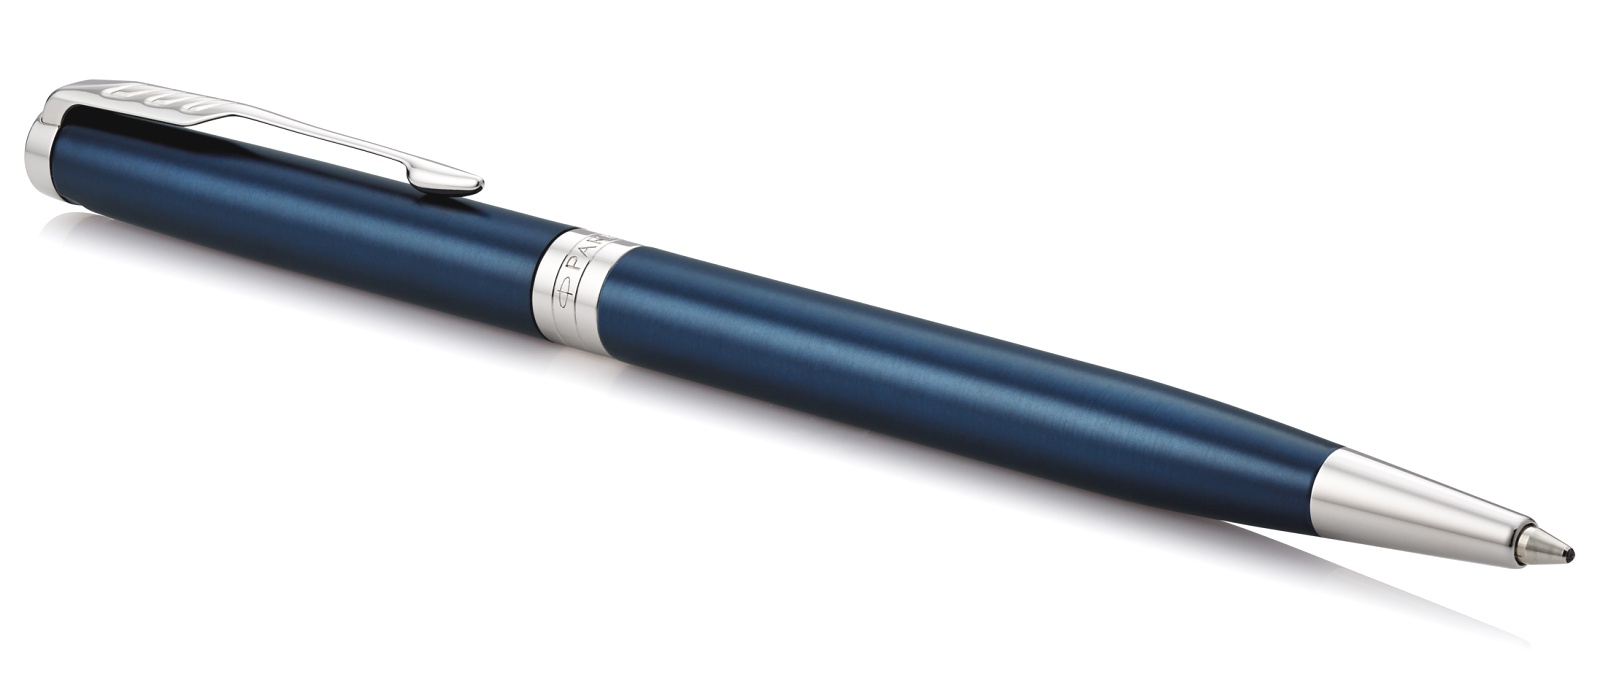  Шариковая ручка Parker Sonnet Slim Core K439, Subtle Blue Lacquer CT, фото 2